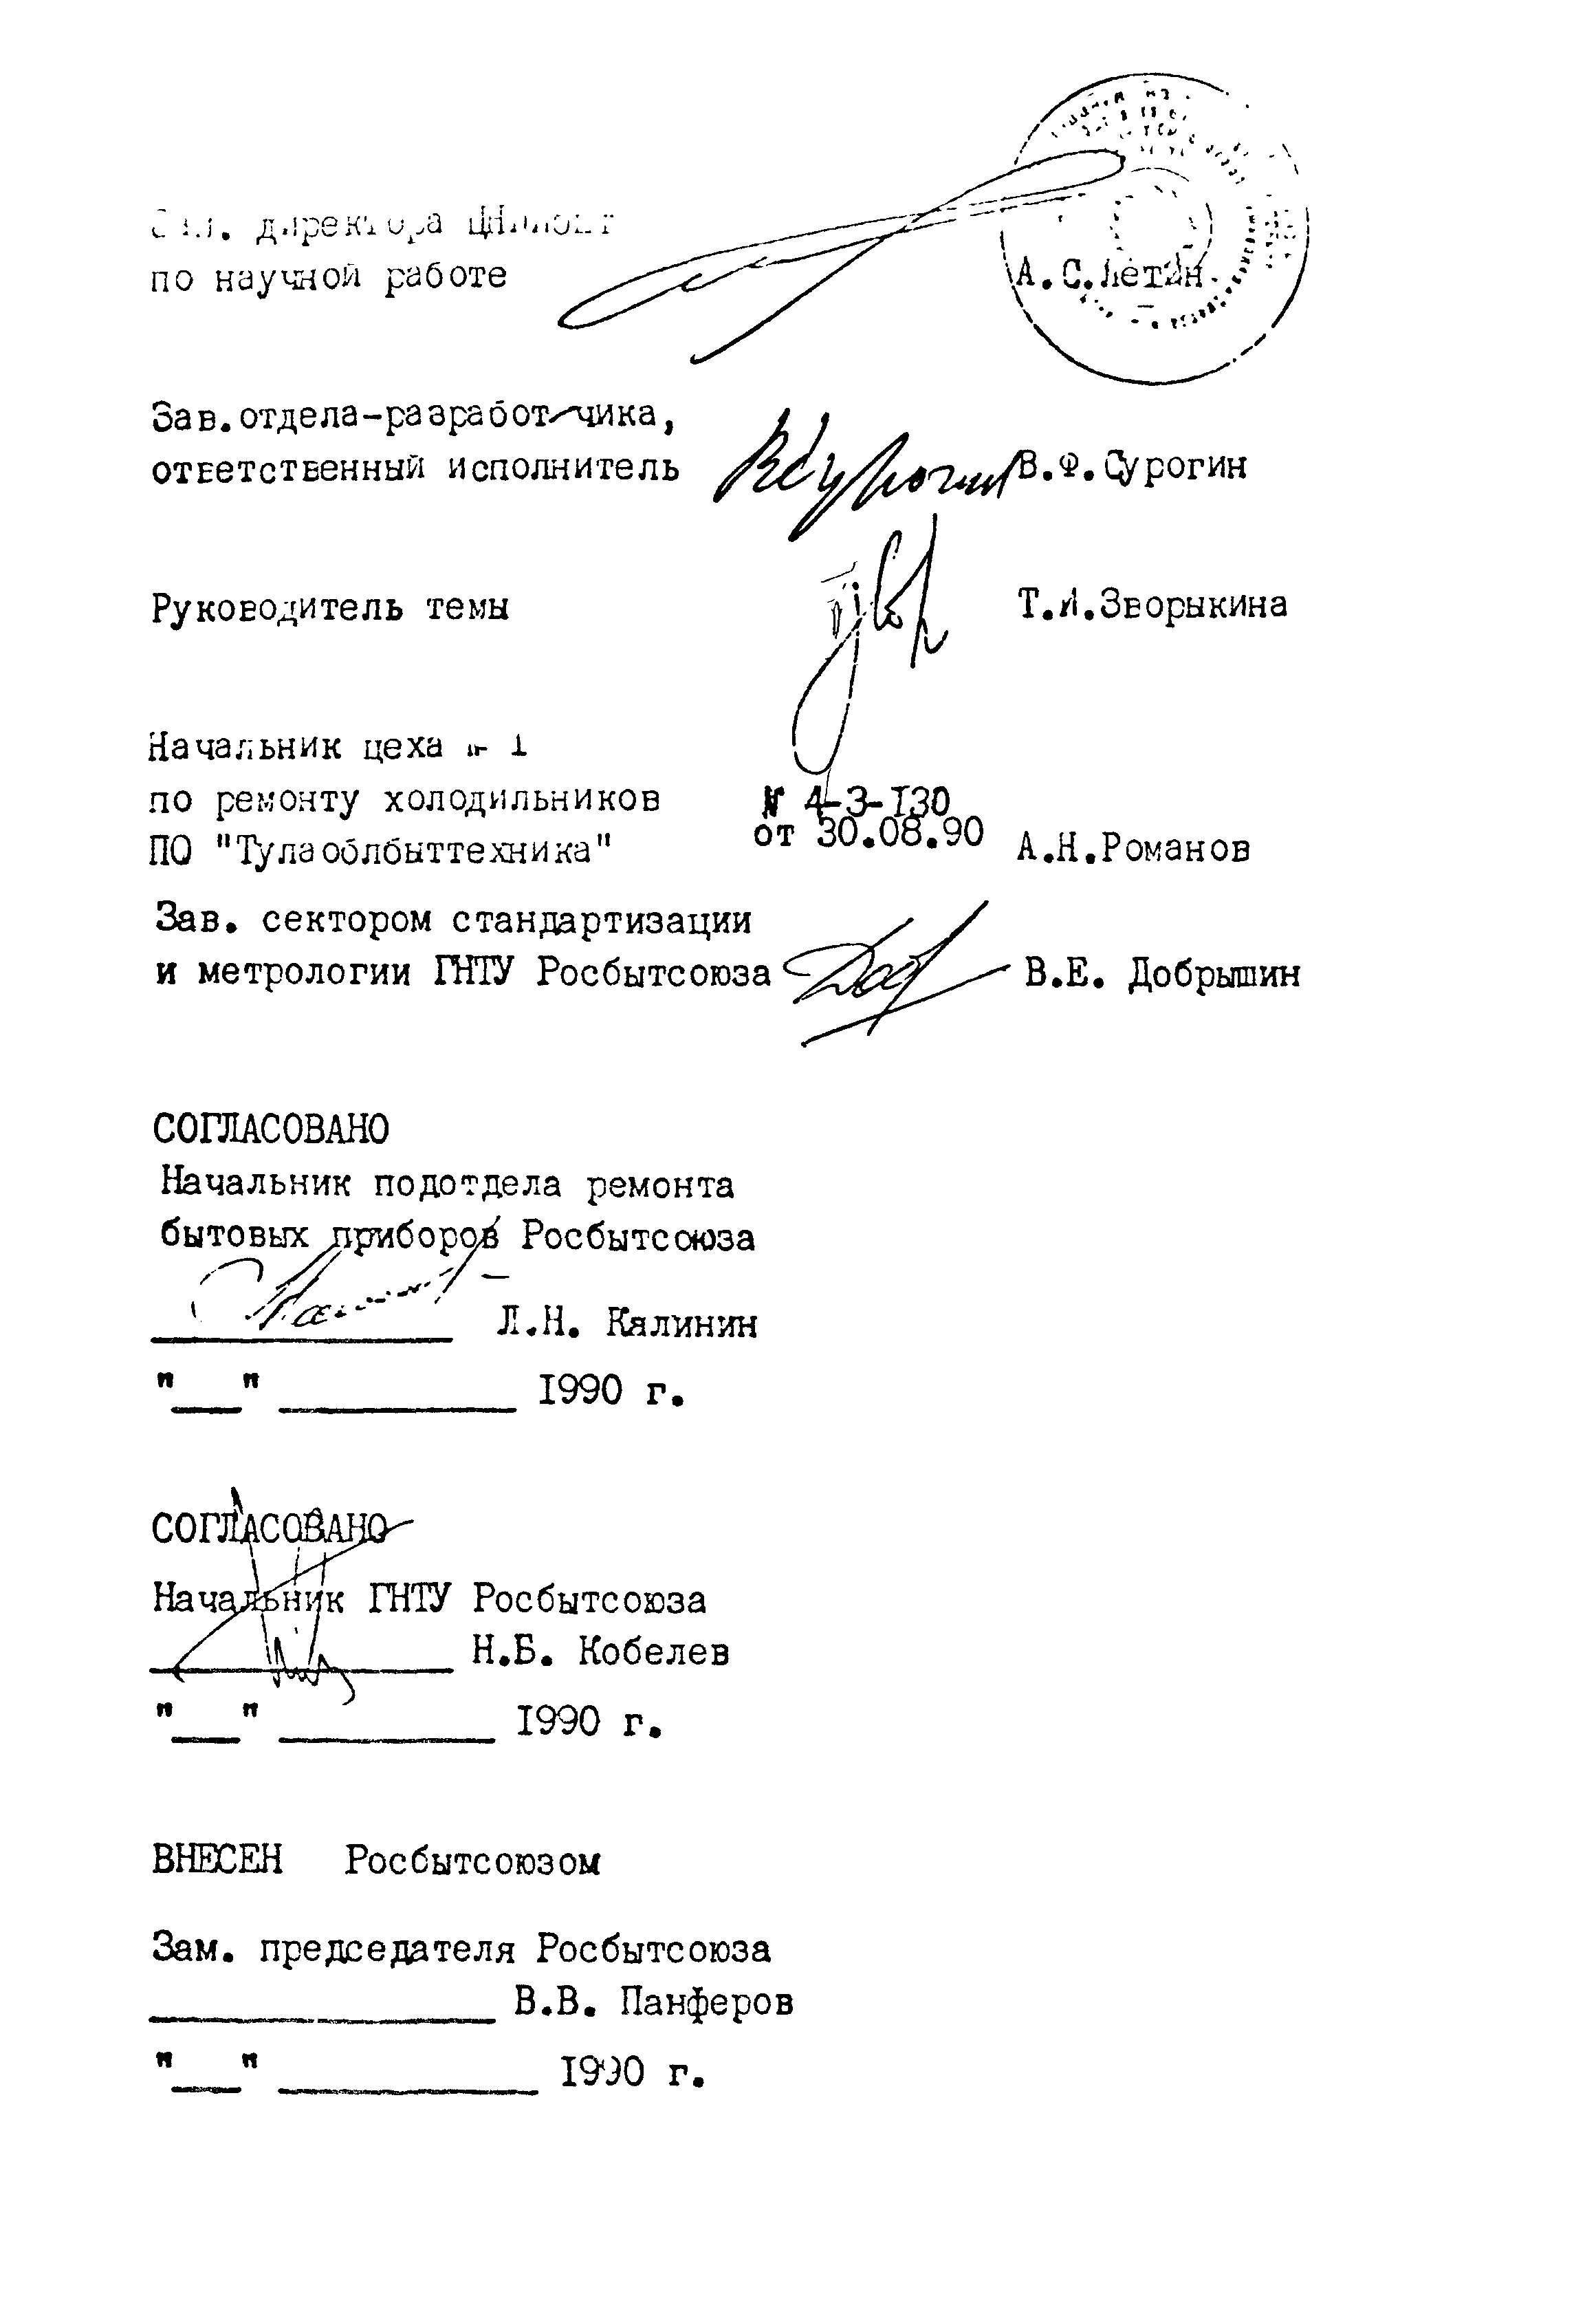 РСТ РСФСР 785-91